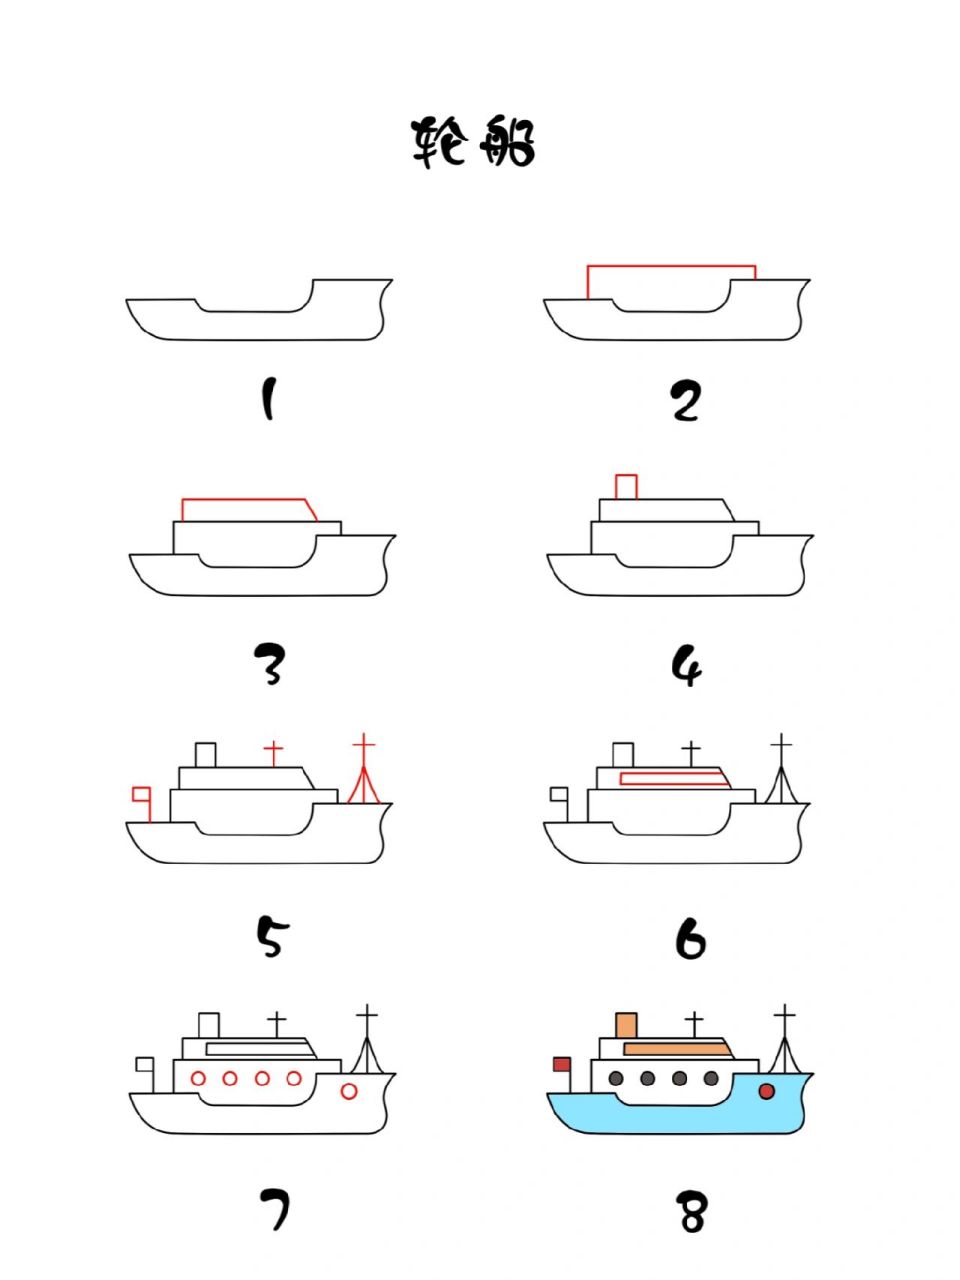 轮船的画法简单图片